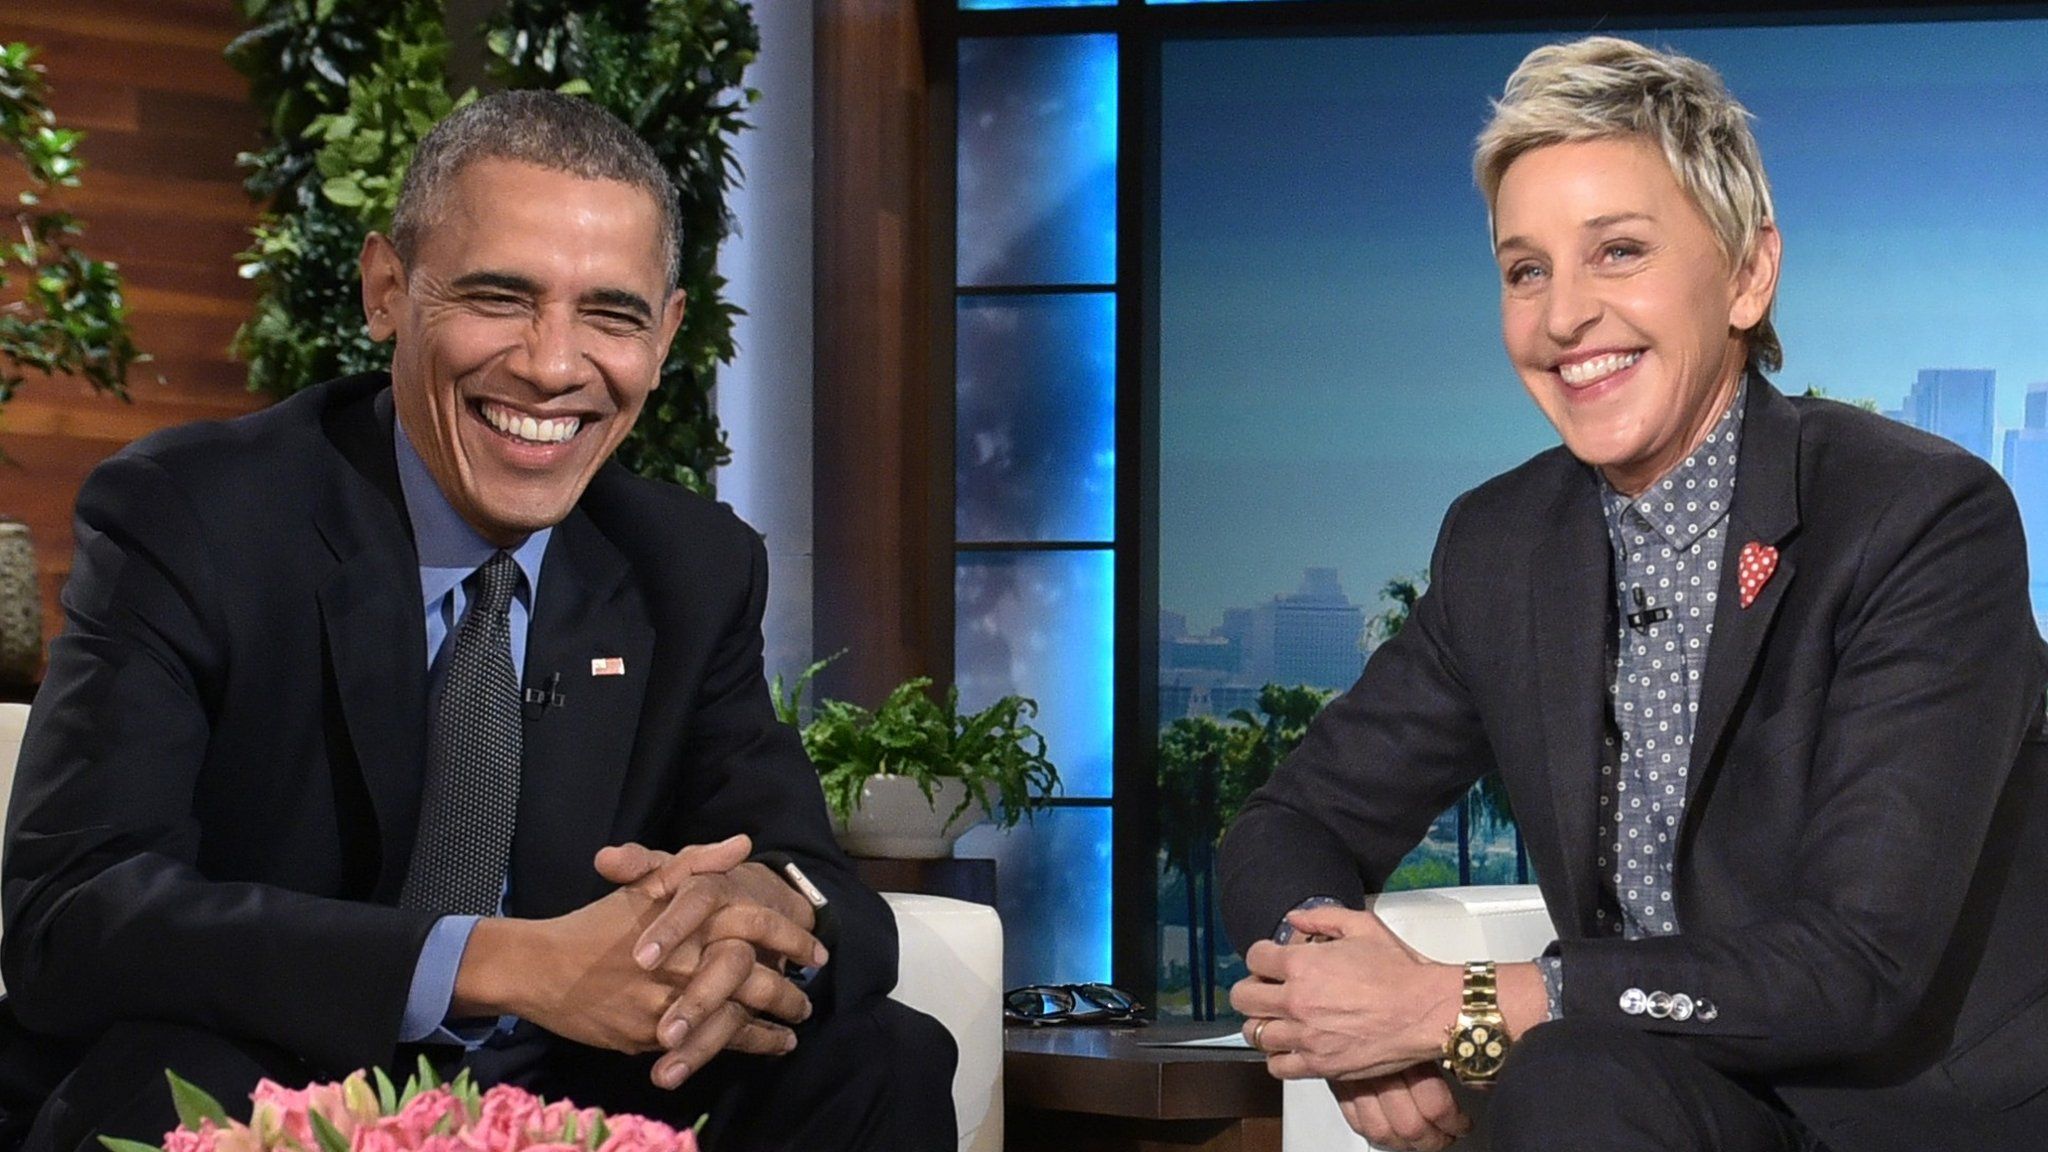 Barack Obama and Ellen DeGeneres